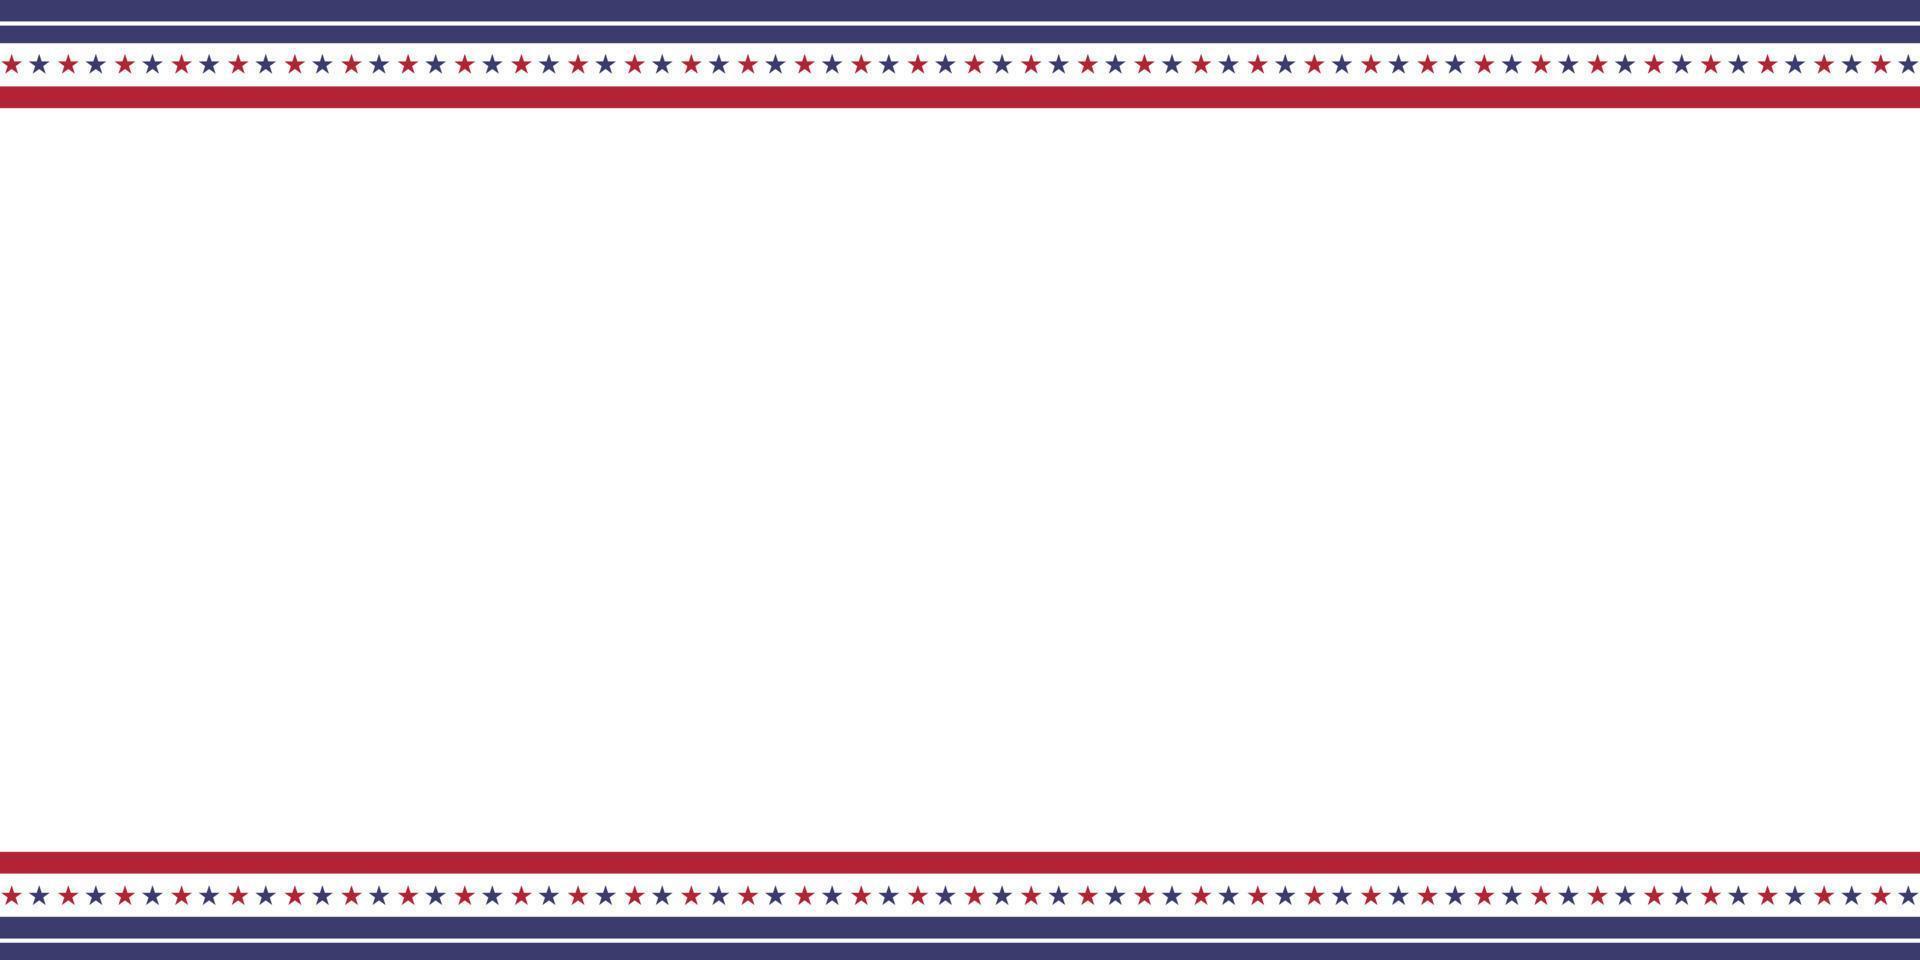 patriottico confine divisore americano Stati Uniti d'America bandiera. vettore